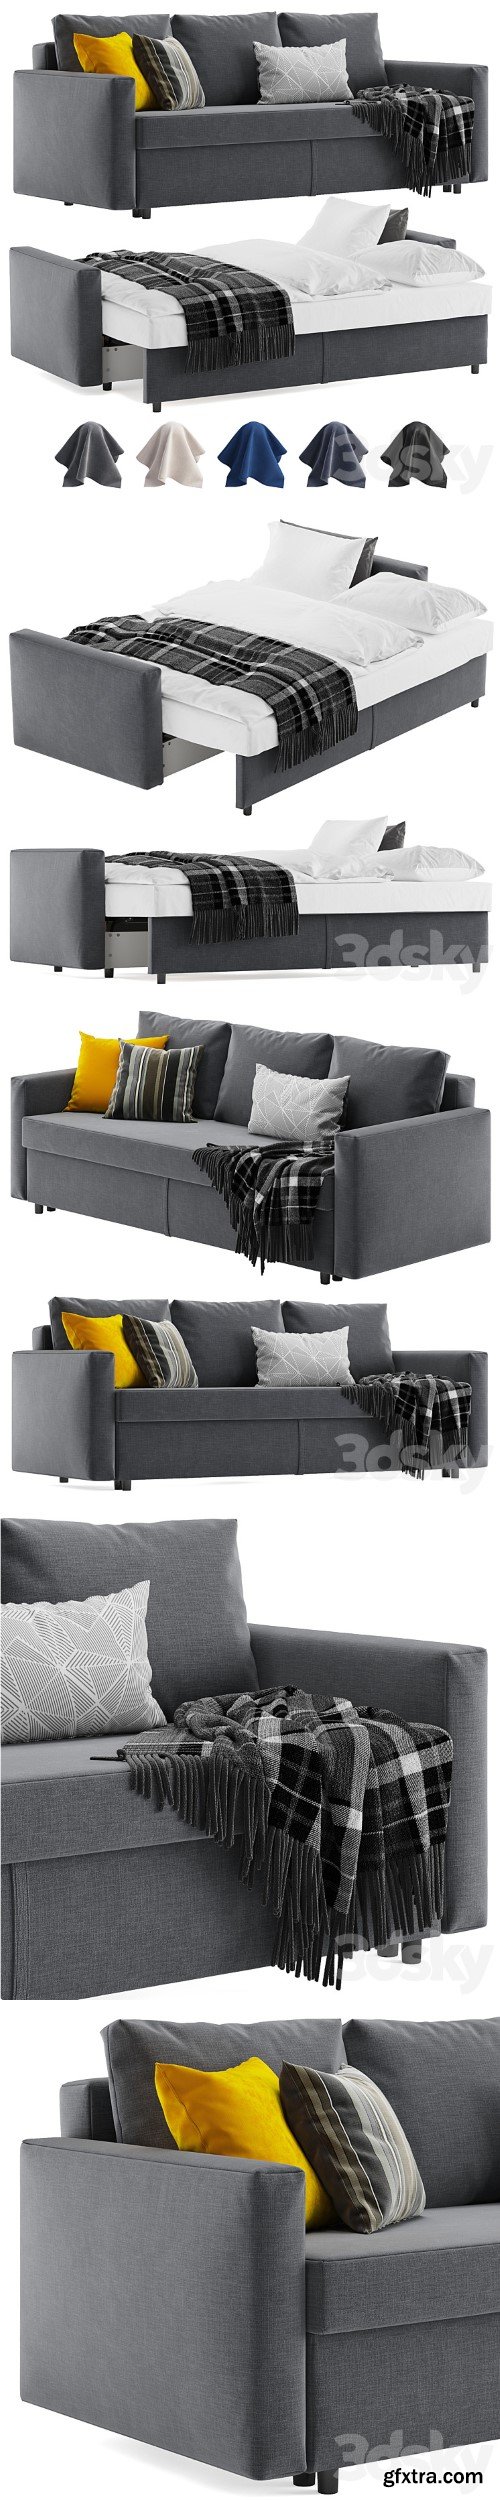 Ikea Friheten sleeper sofa 3 seats